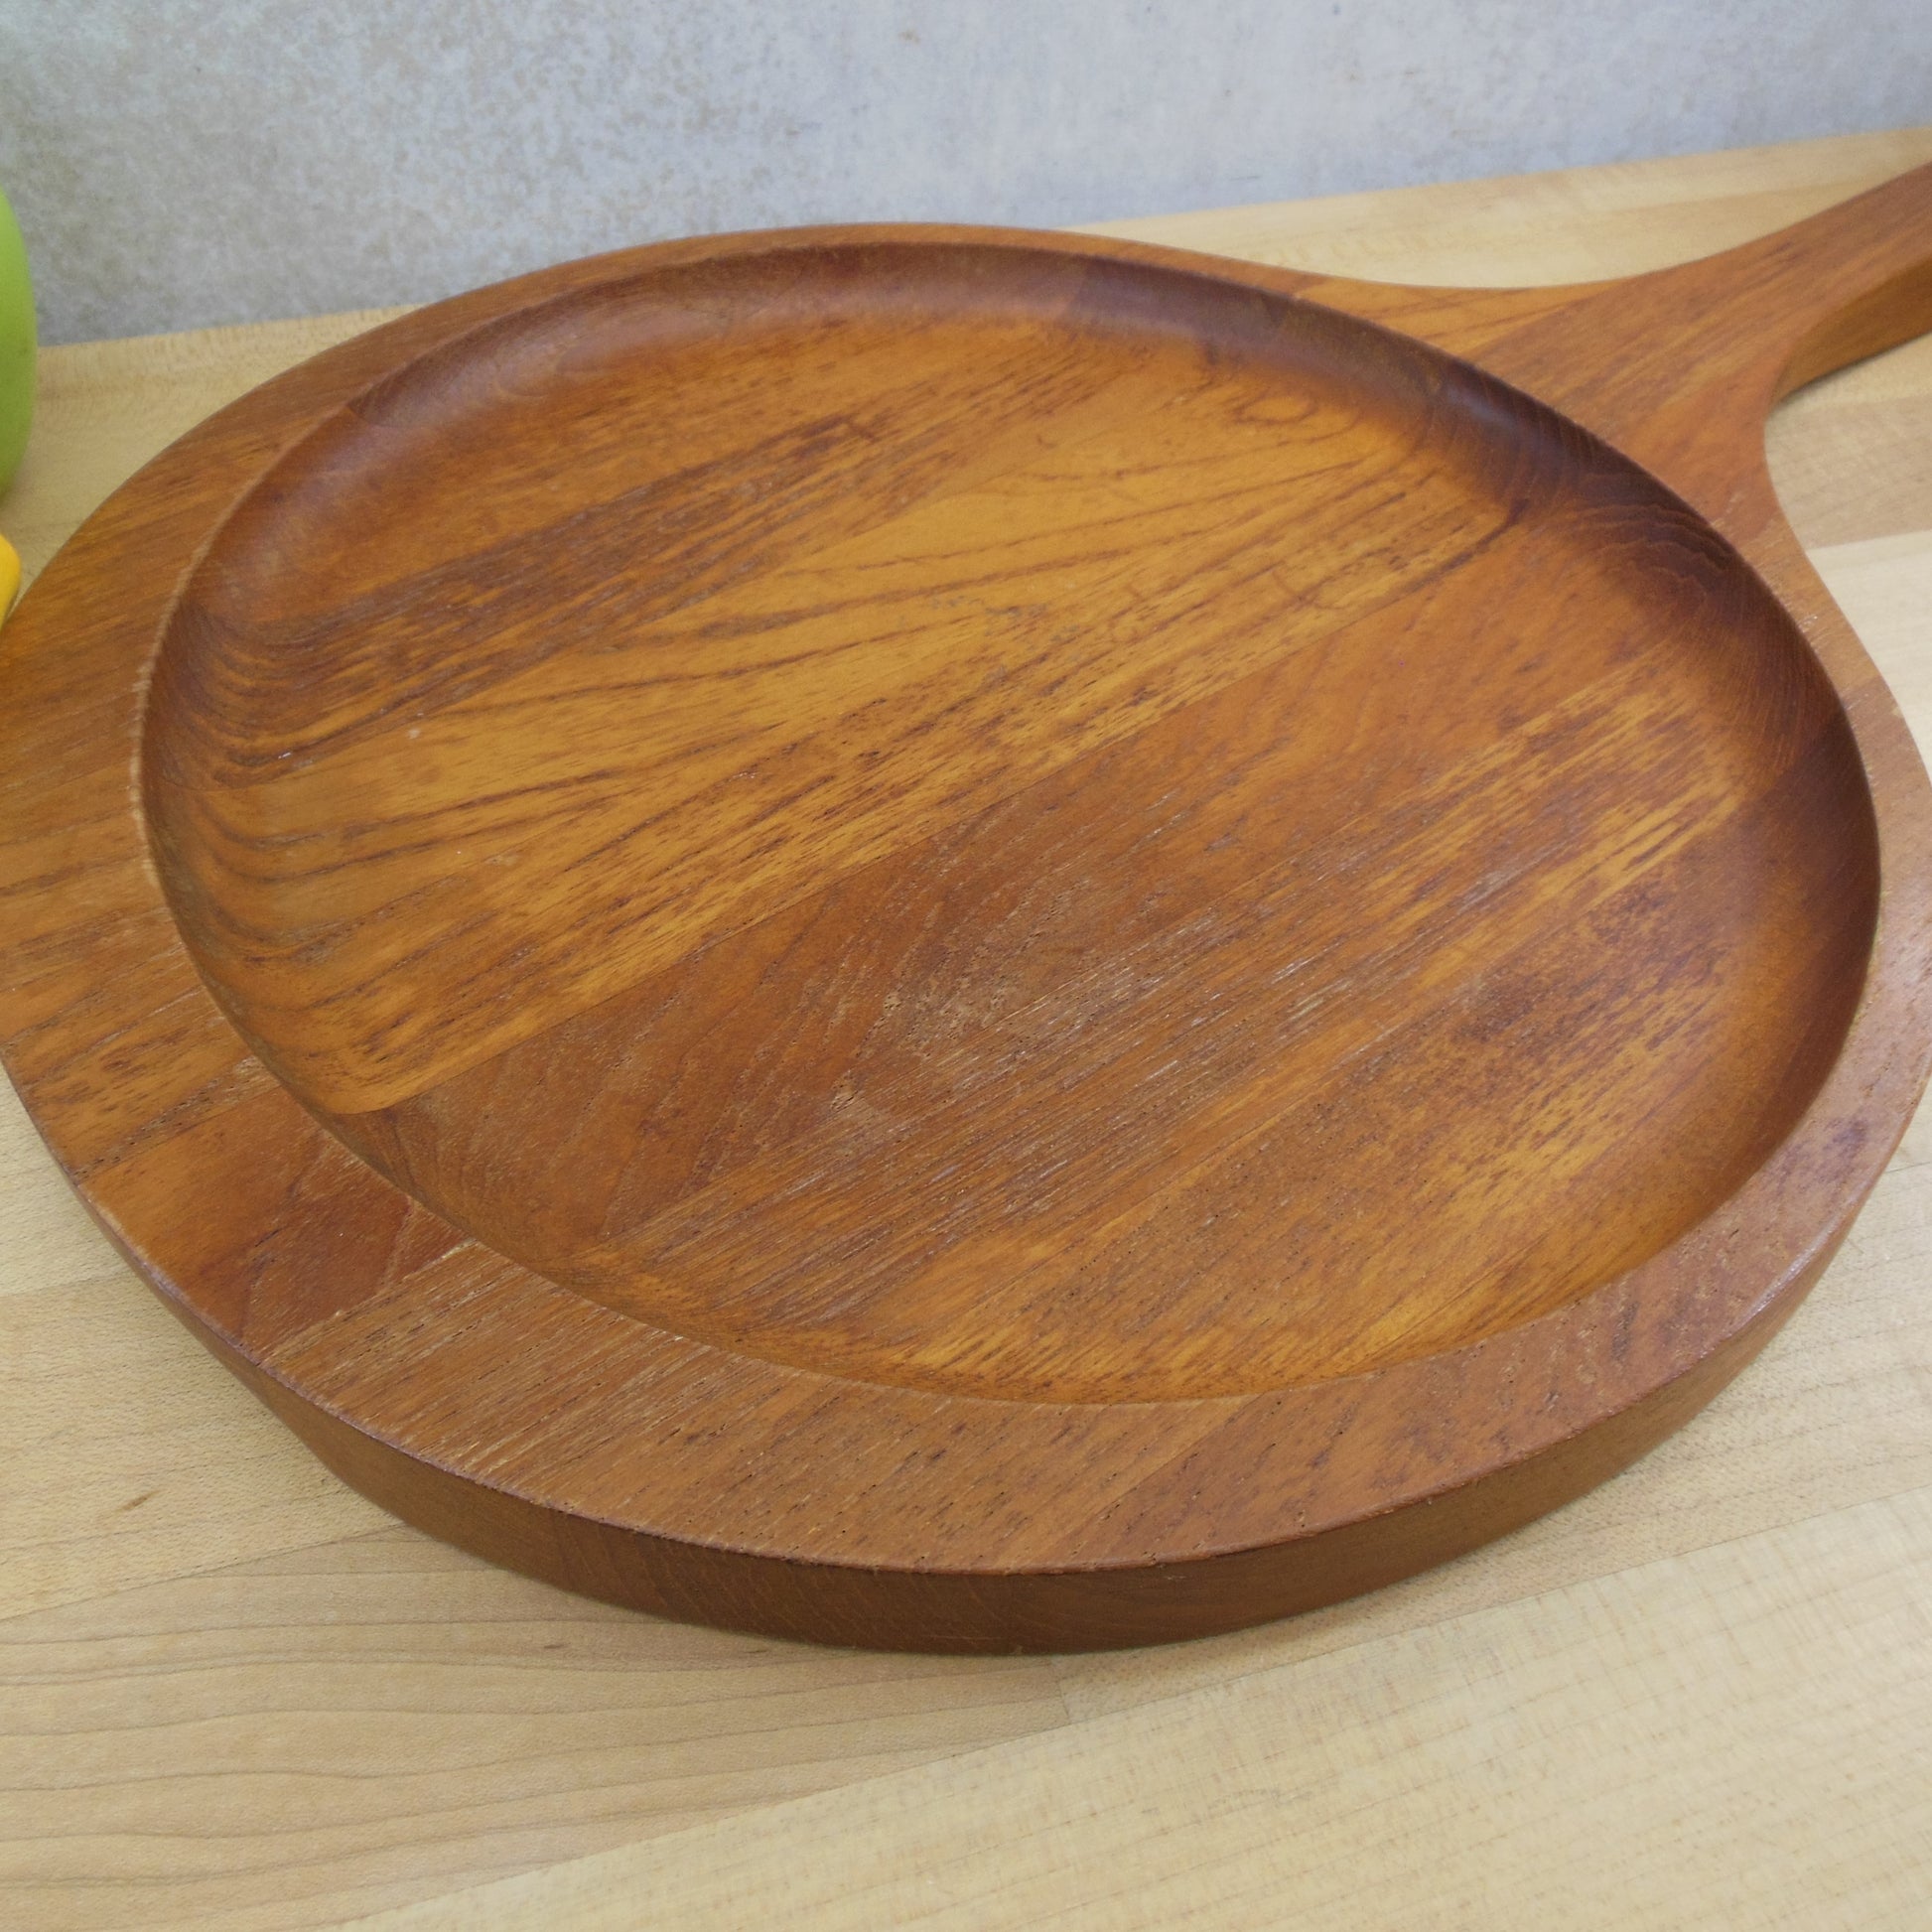 Kjeni Denmark Teak Wood Round Serving Tray Platter Handle Round